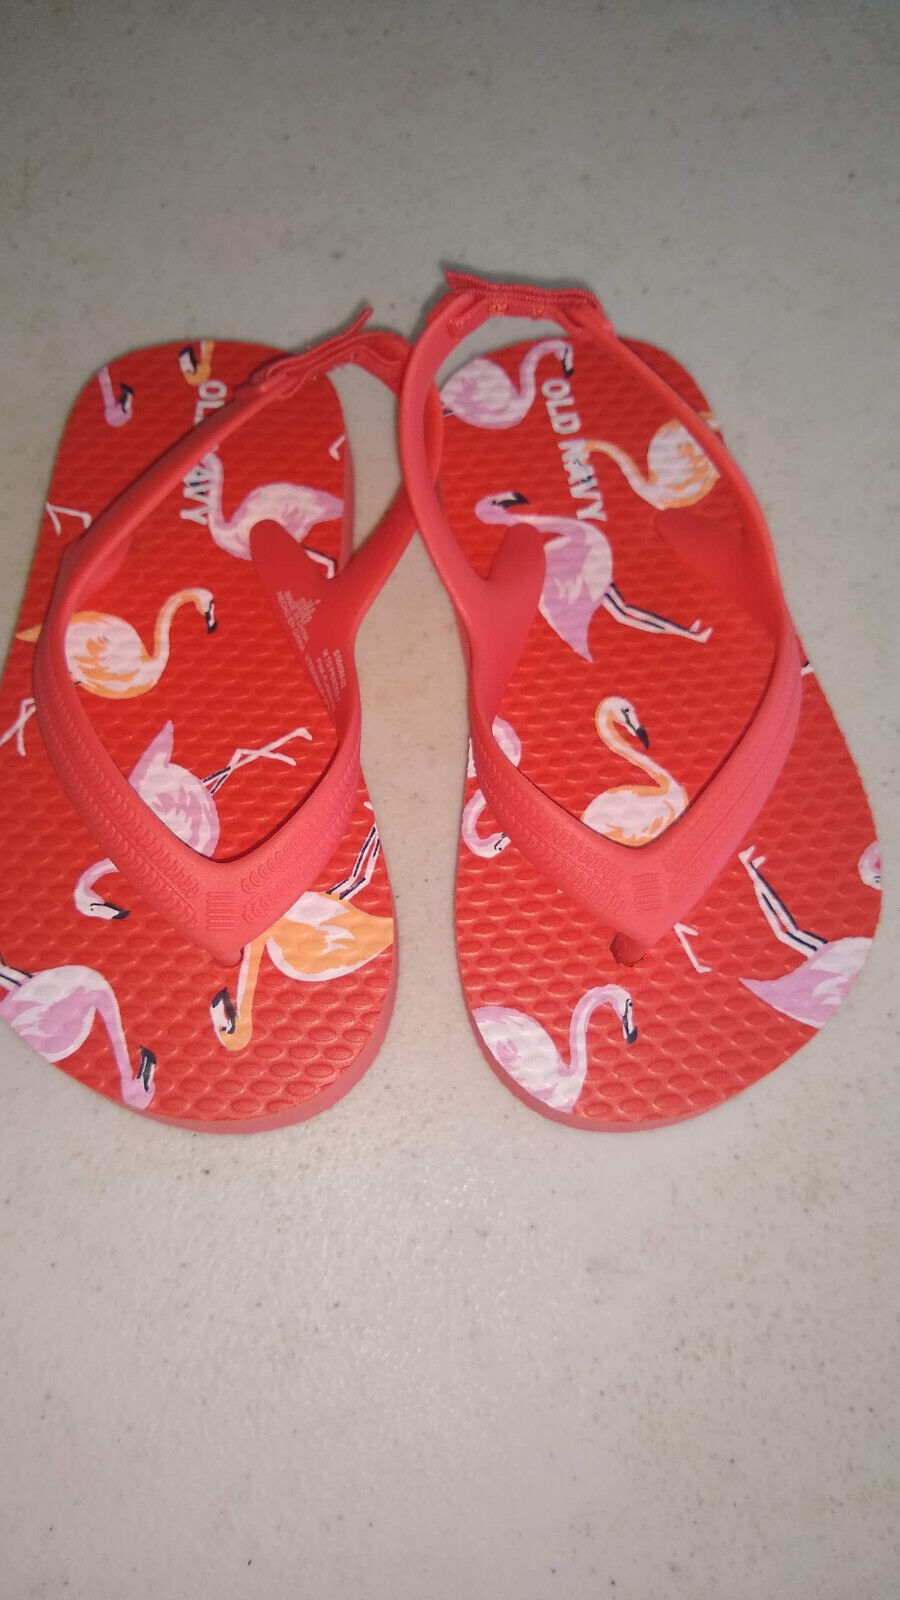 Old Navy Flip Flop/sandal strapped Flamingo design size 6 - $8.00